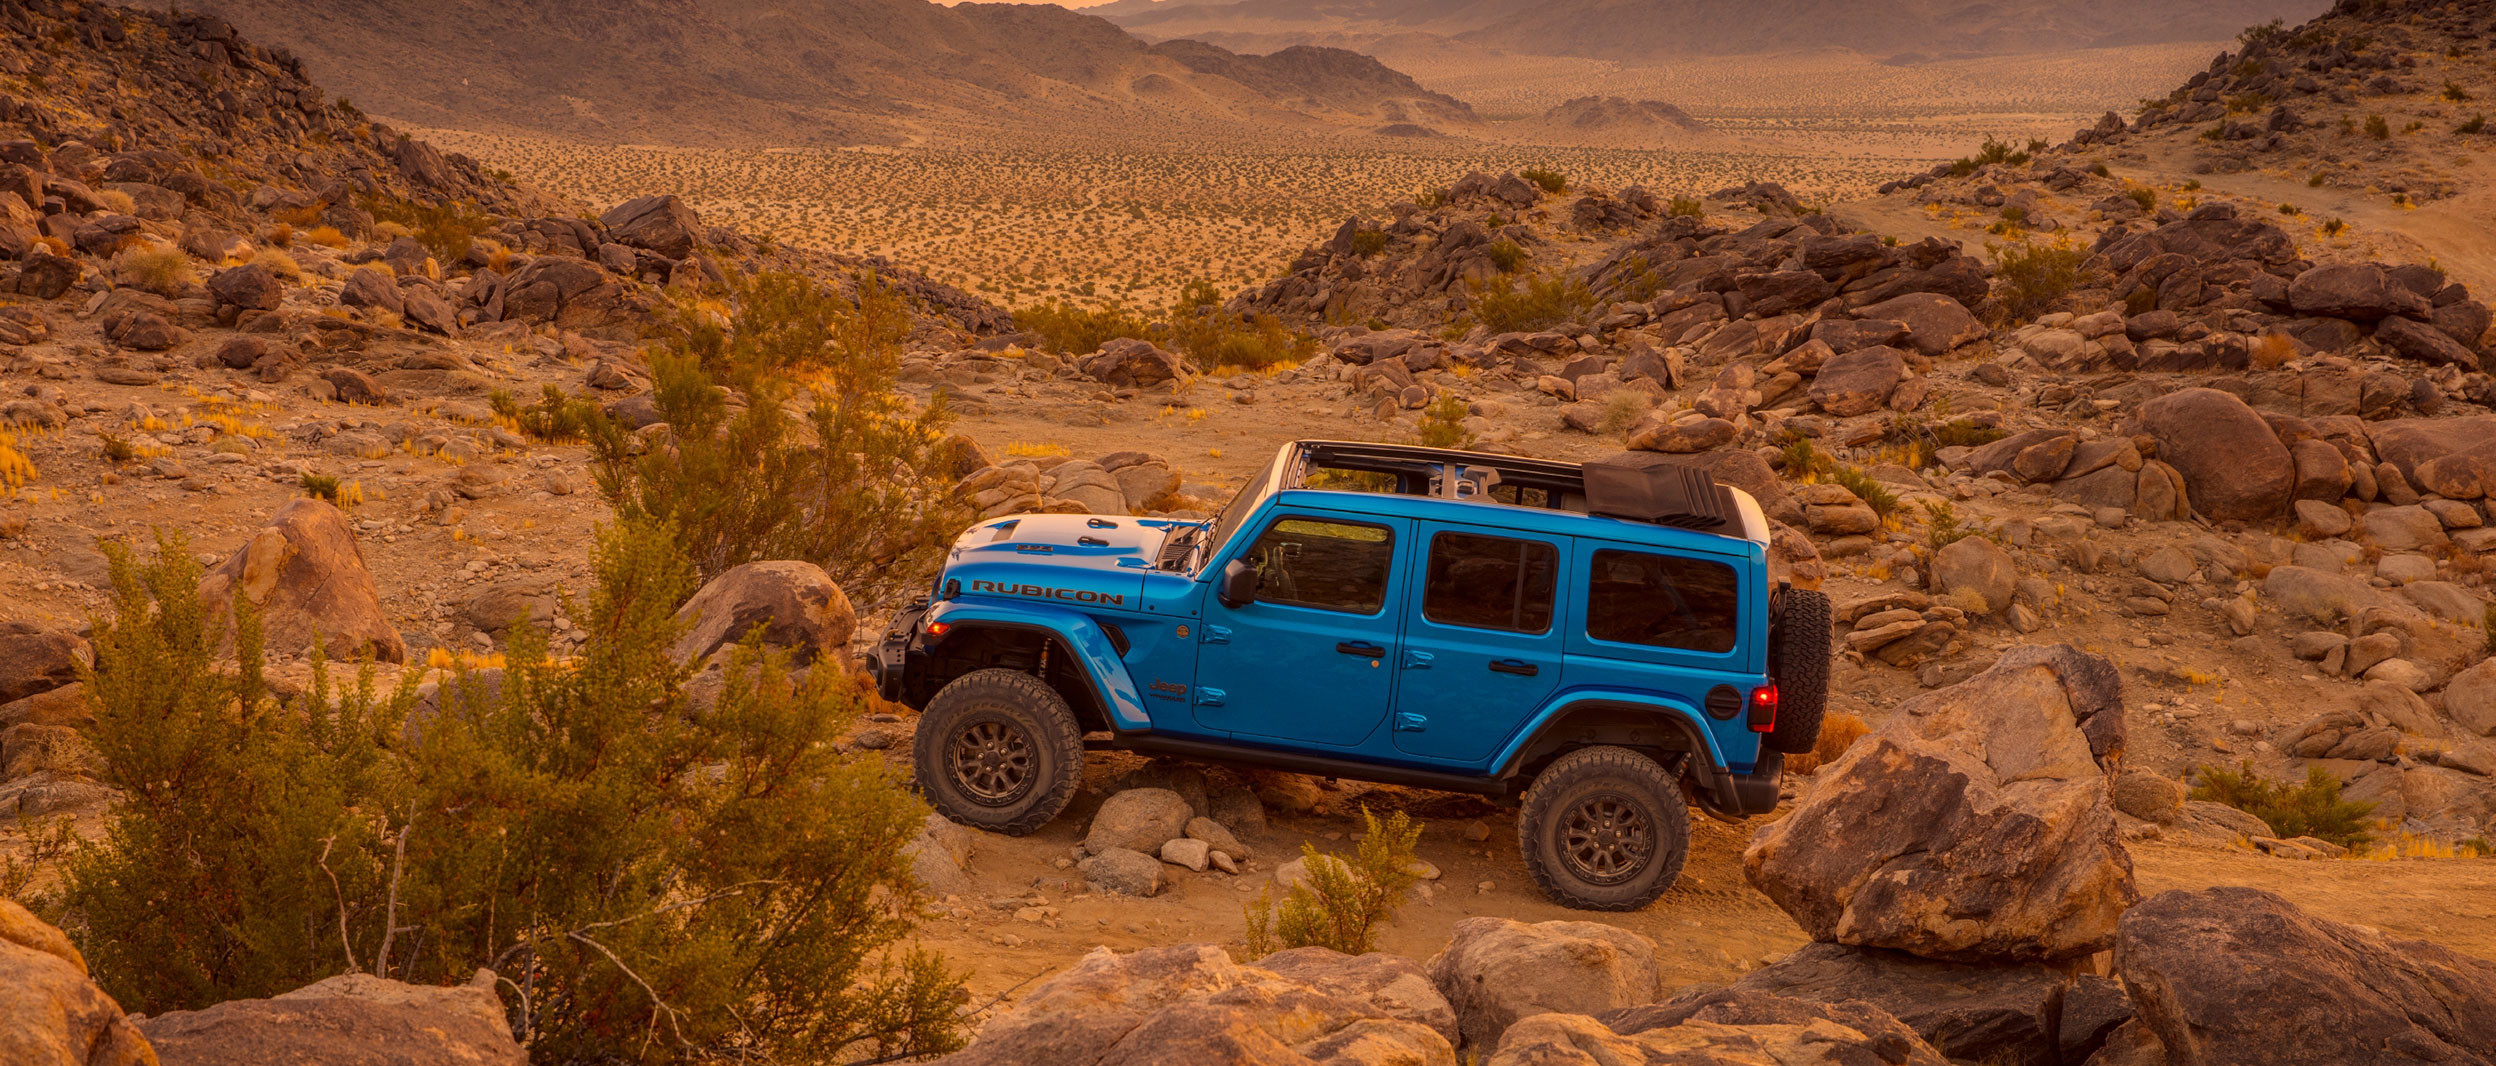 Vue latérale d’un Jeep Wrangler Rubicon bleu stationné dans les bad-lands.